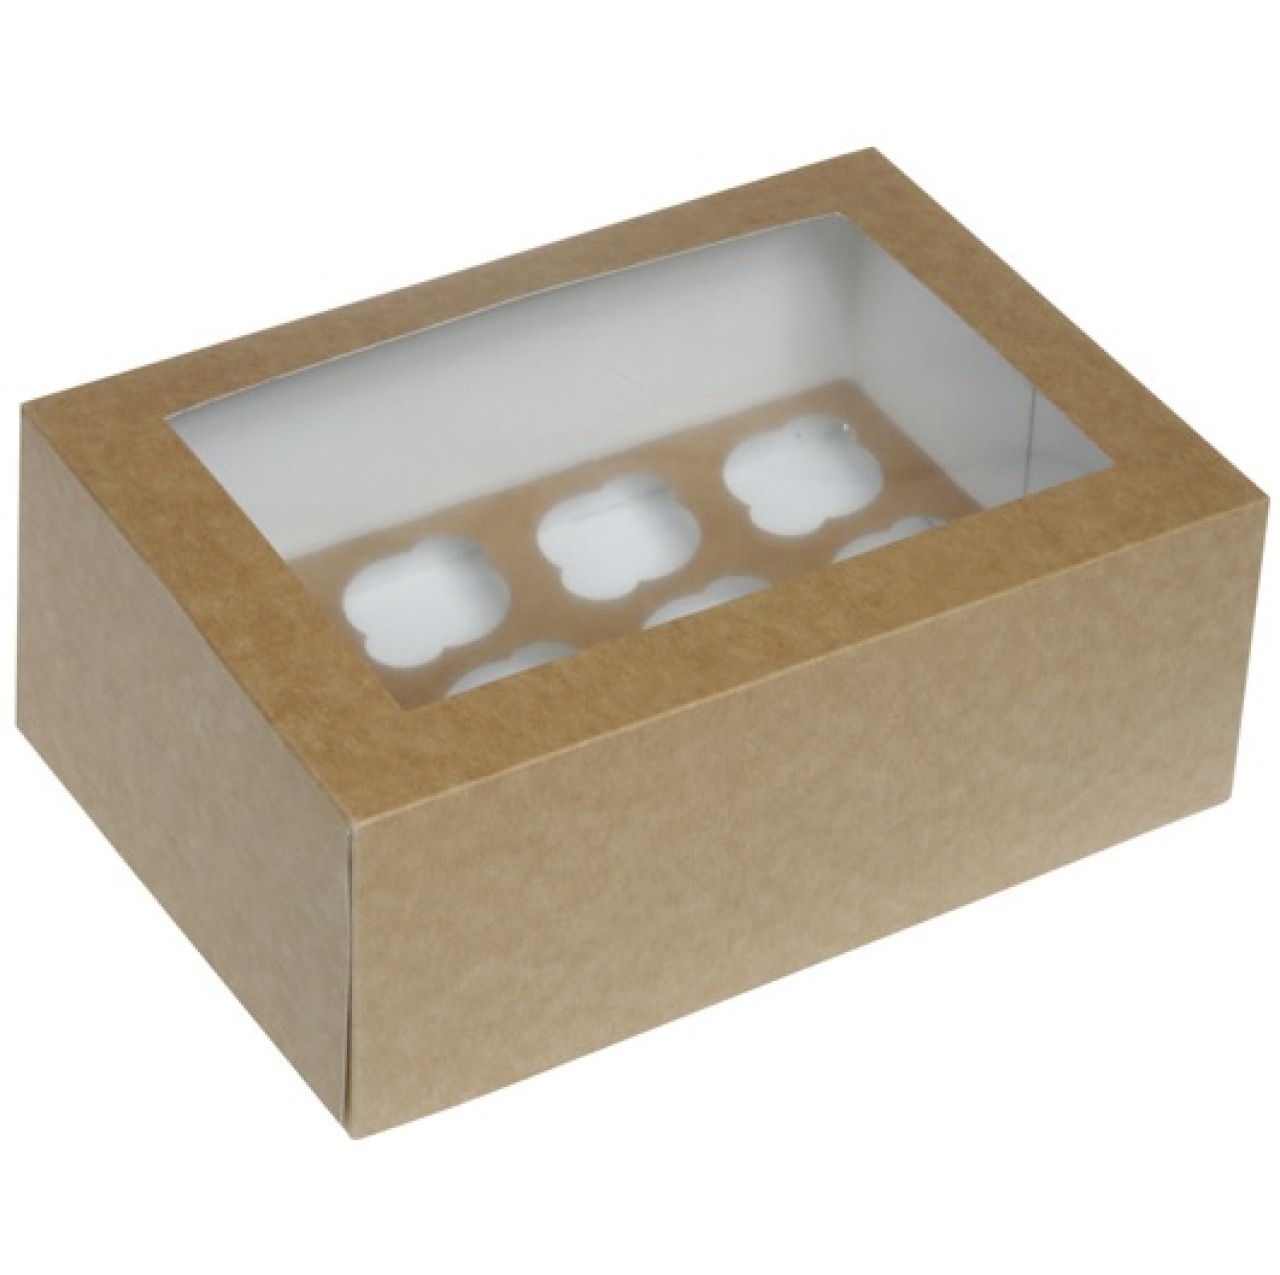 Cupcake Box für 12 mini Cupcakes, kraftpapier, braun